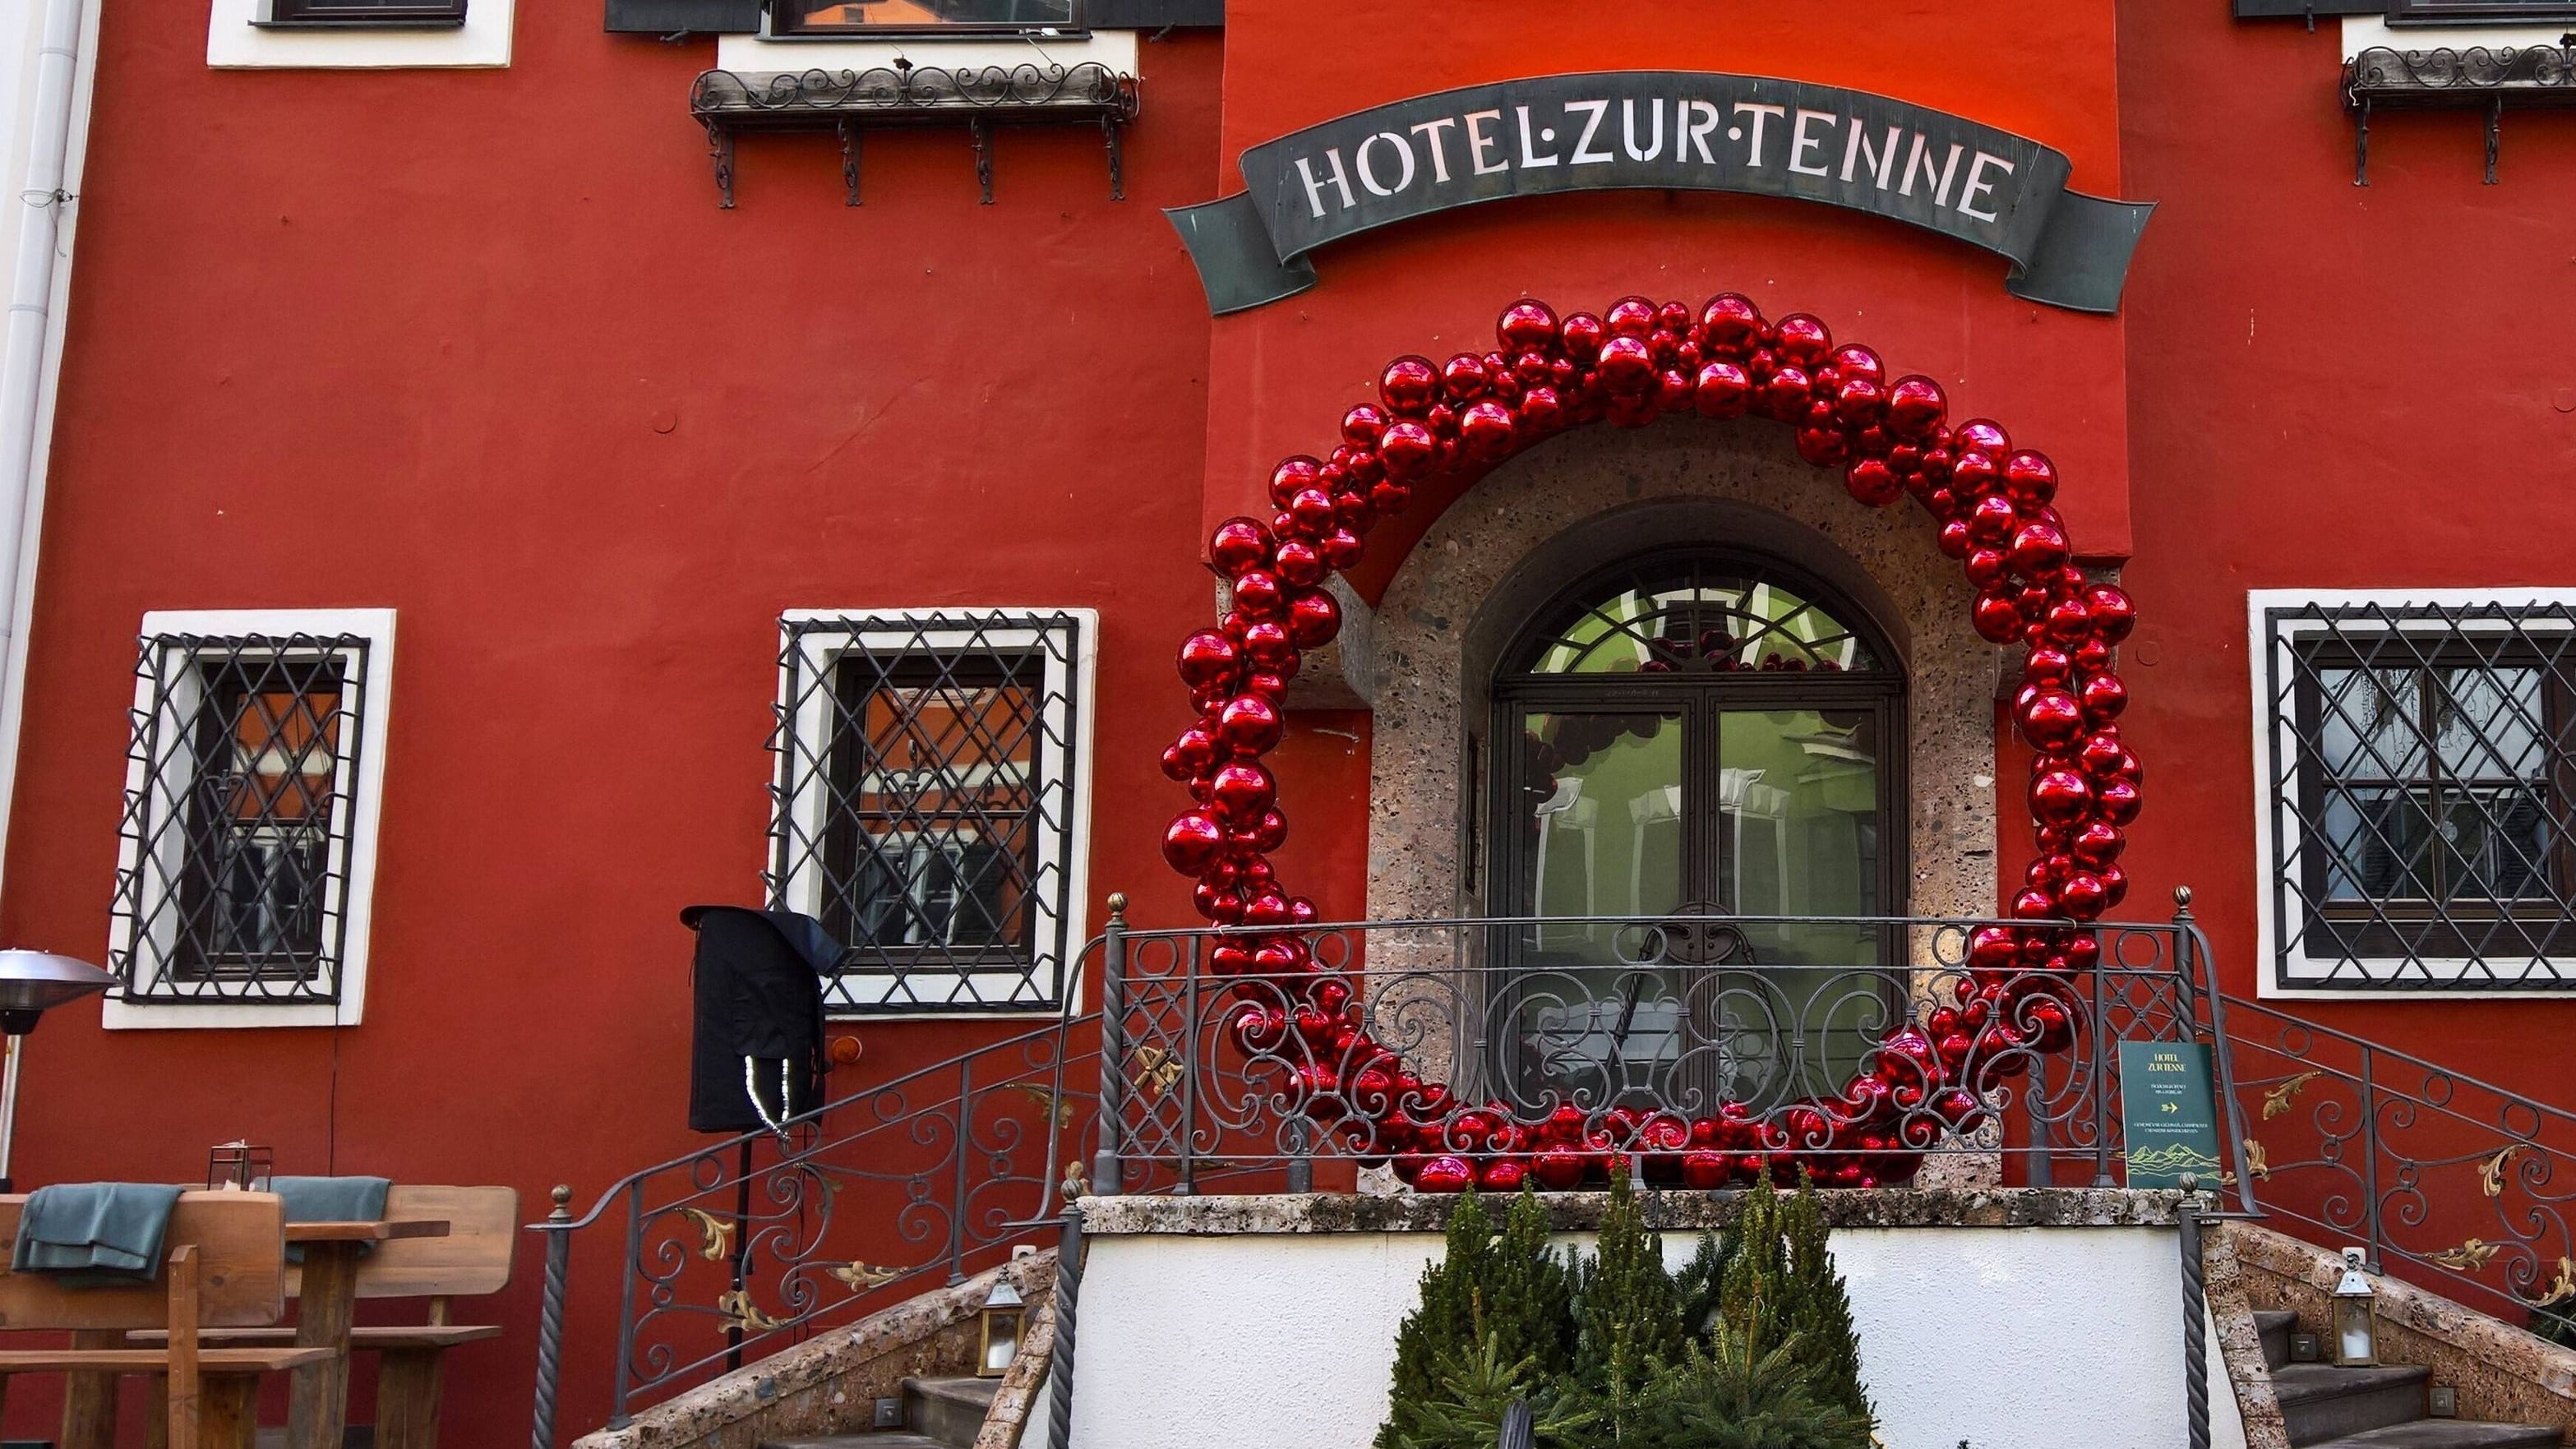 Hotel zur Tenne: Promidomizil in Kitzbühel wird abgerissen